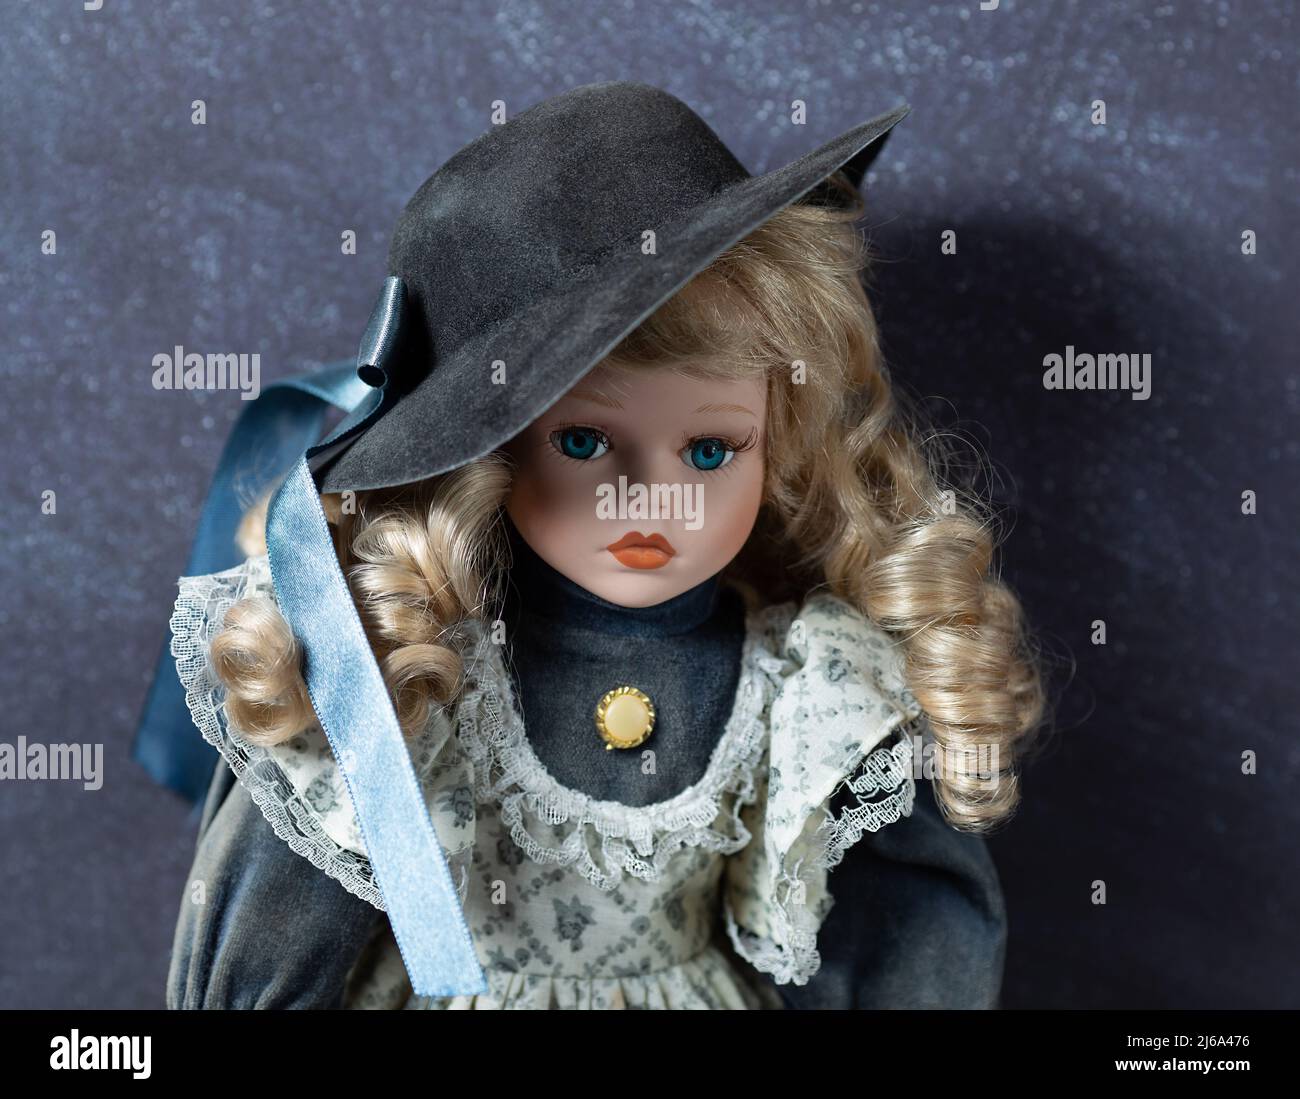 Incroyable réaliste vintage jouet avec les yeux bleus.la poupée habillée dans une robe blanc-bleu avec la dentelle et a un cheveux blond. Mise au point sélective. Poupée en porcelaine. Banque D'Images